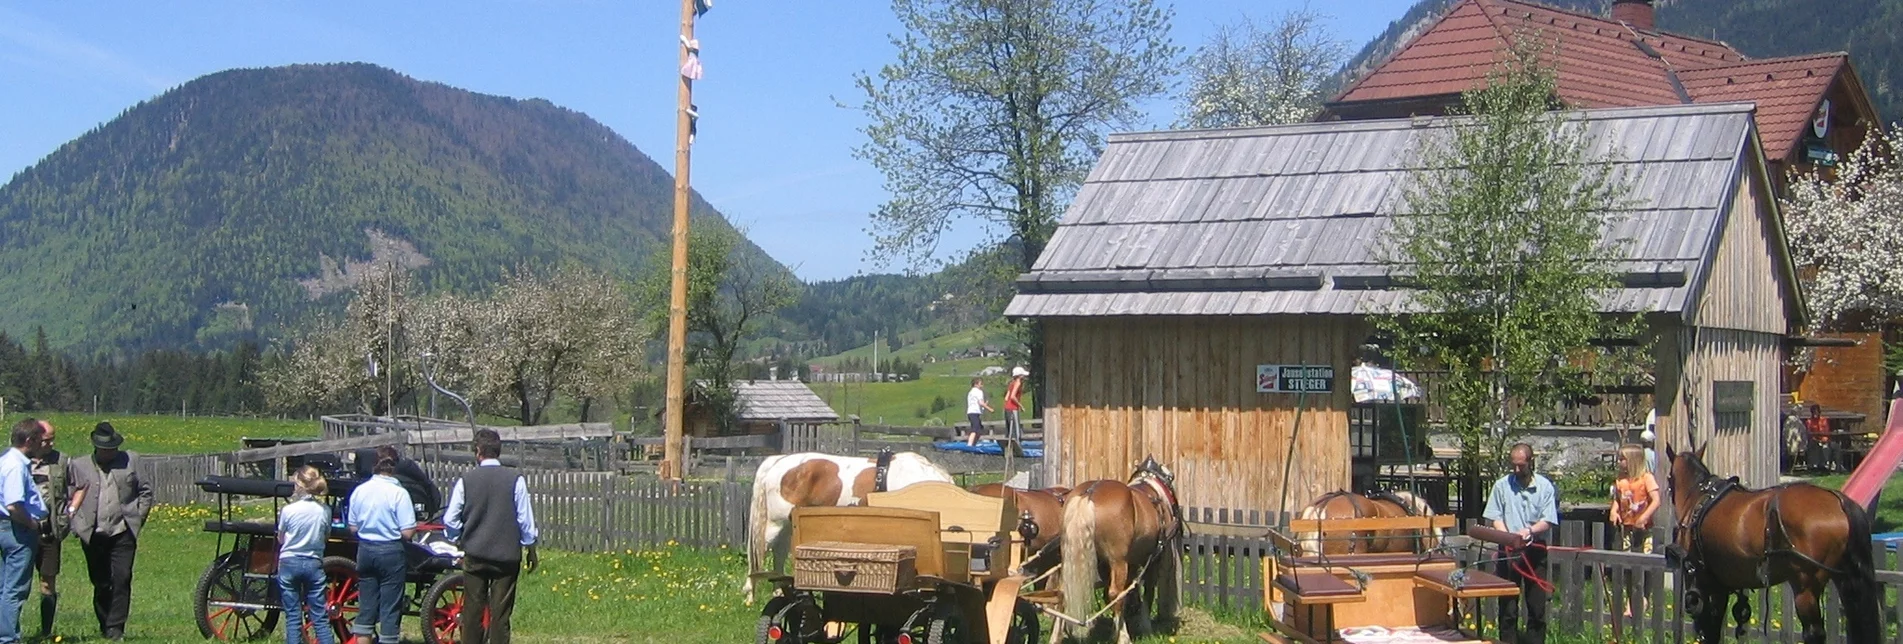 Horse Riding Knoppenmoos bridle path - Touren-Impression #1 | © Reitgemeinschaft Ausseerland